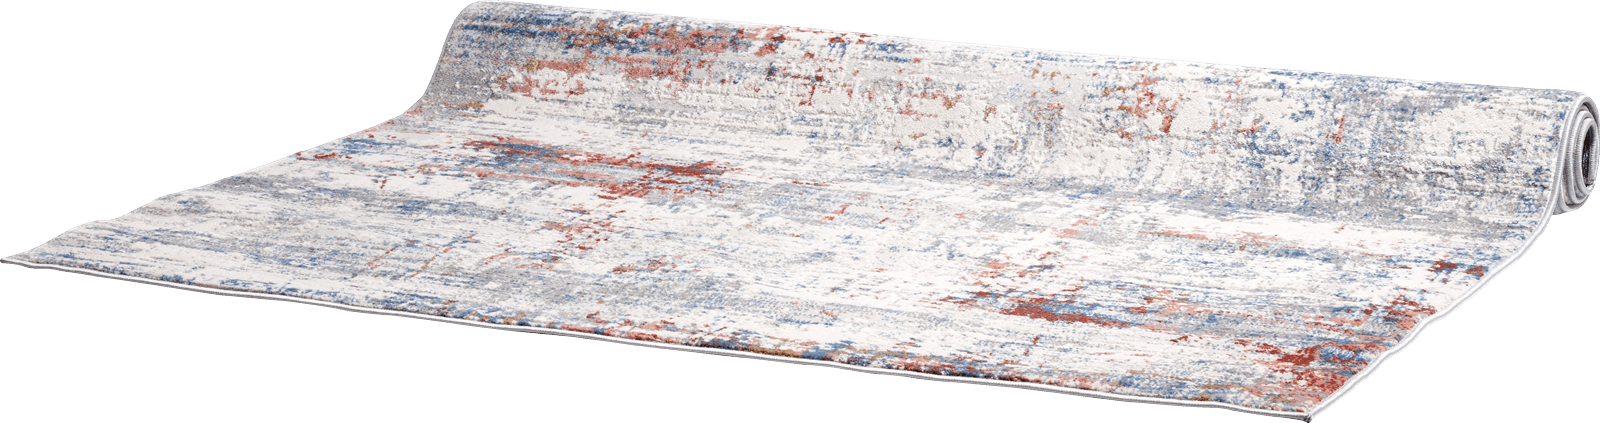 XOOON - Coco Maison - Jessy rug 160x230cm